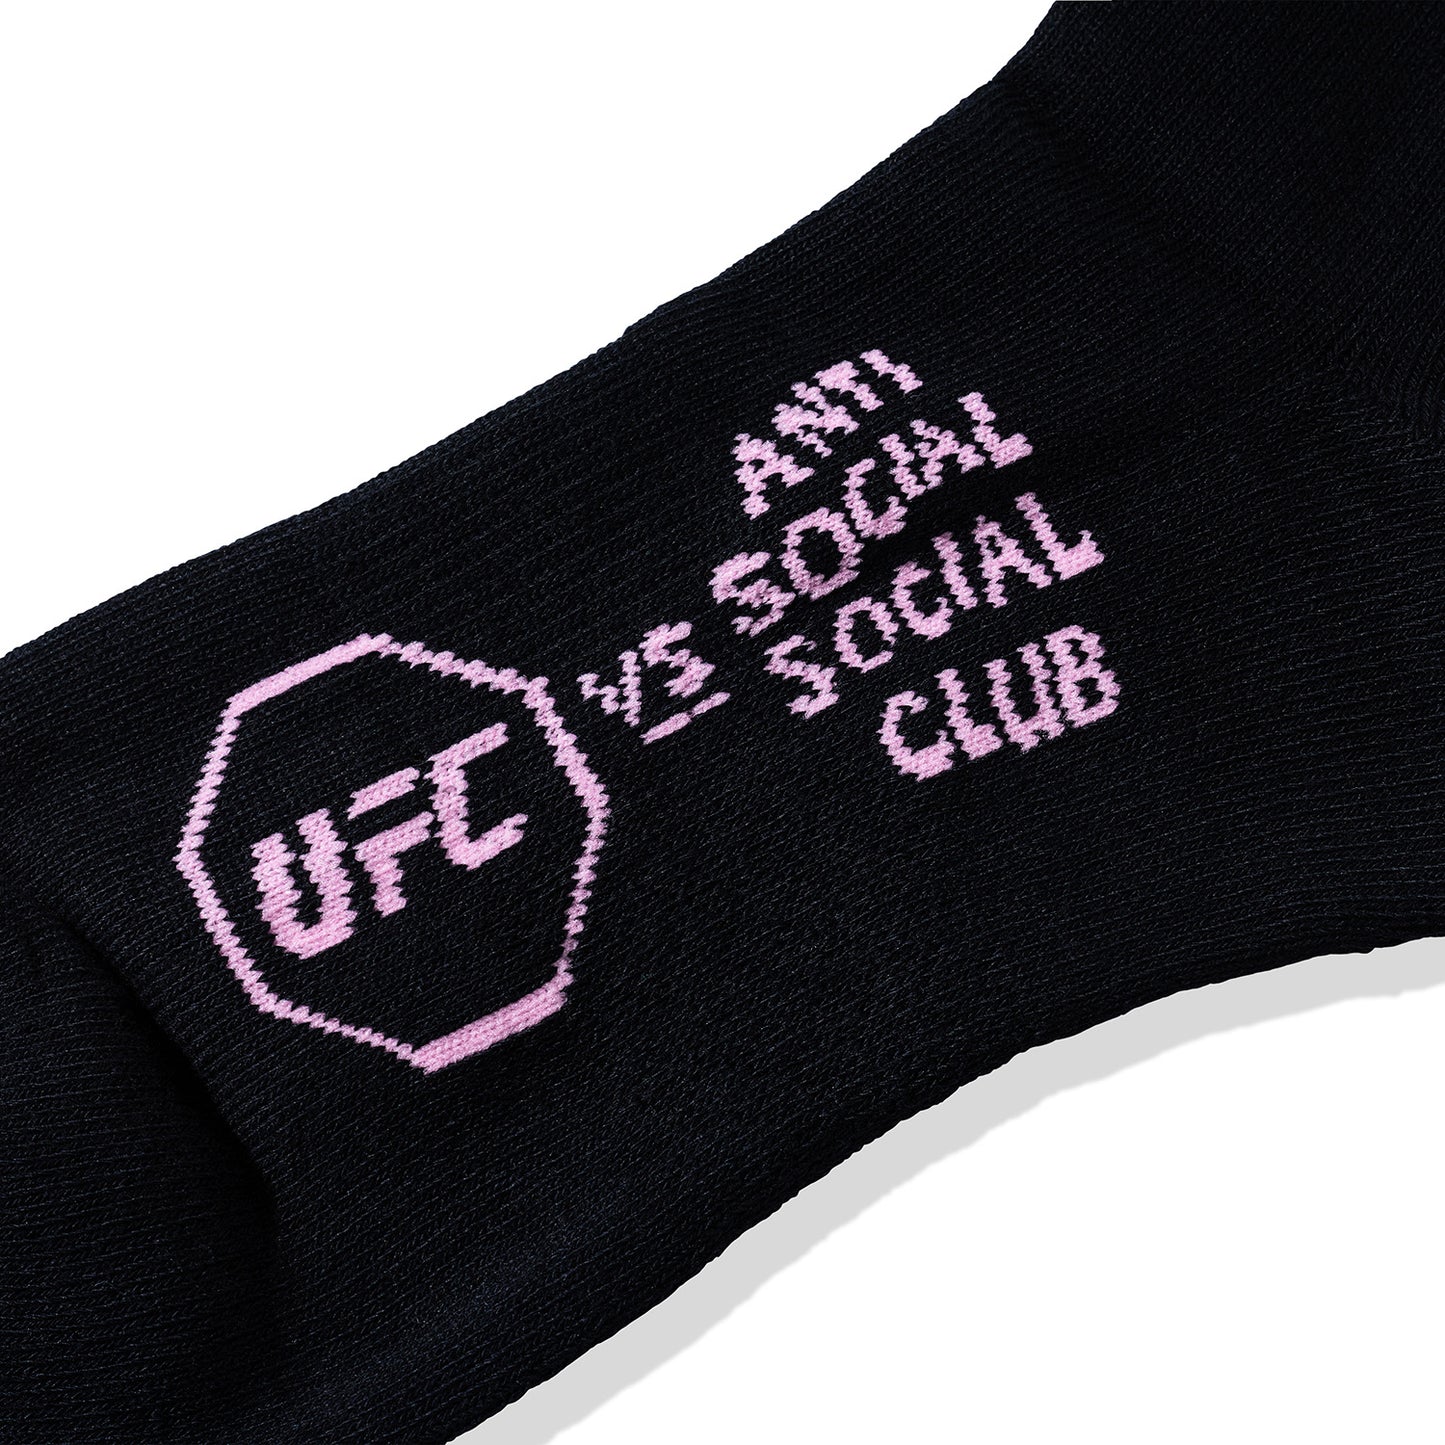 ASSC x UFC Main Event Socks - Black